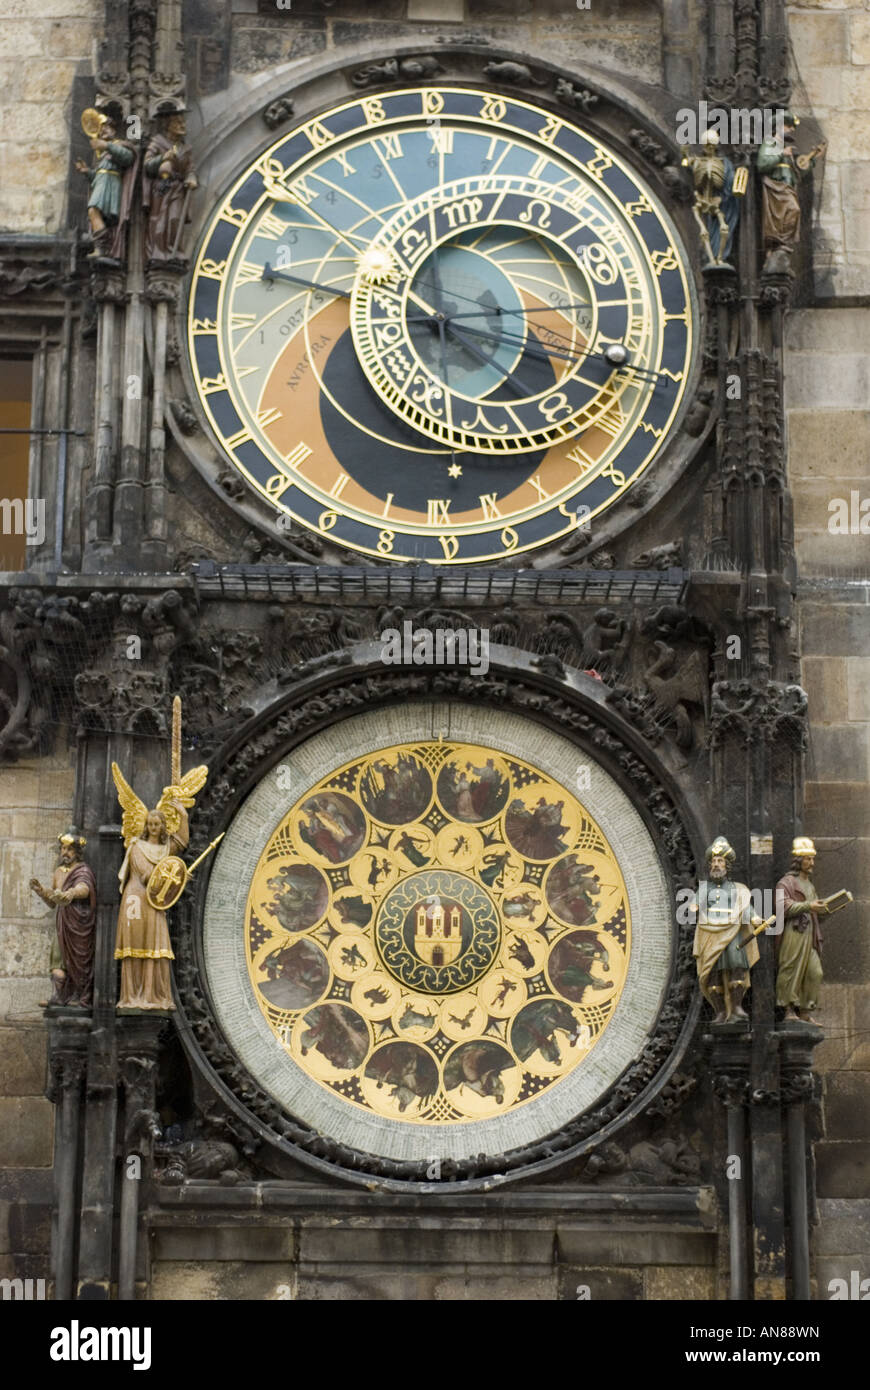 L'Horloge Astronomique de Prague Old Town Square, République tchèque. Banque D'Images